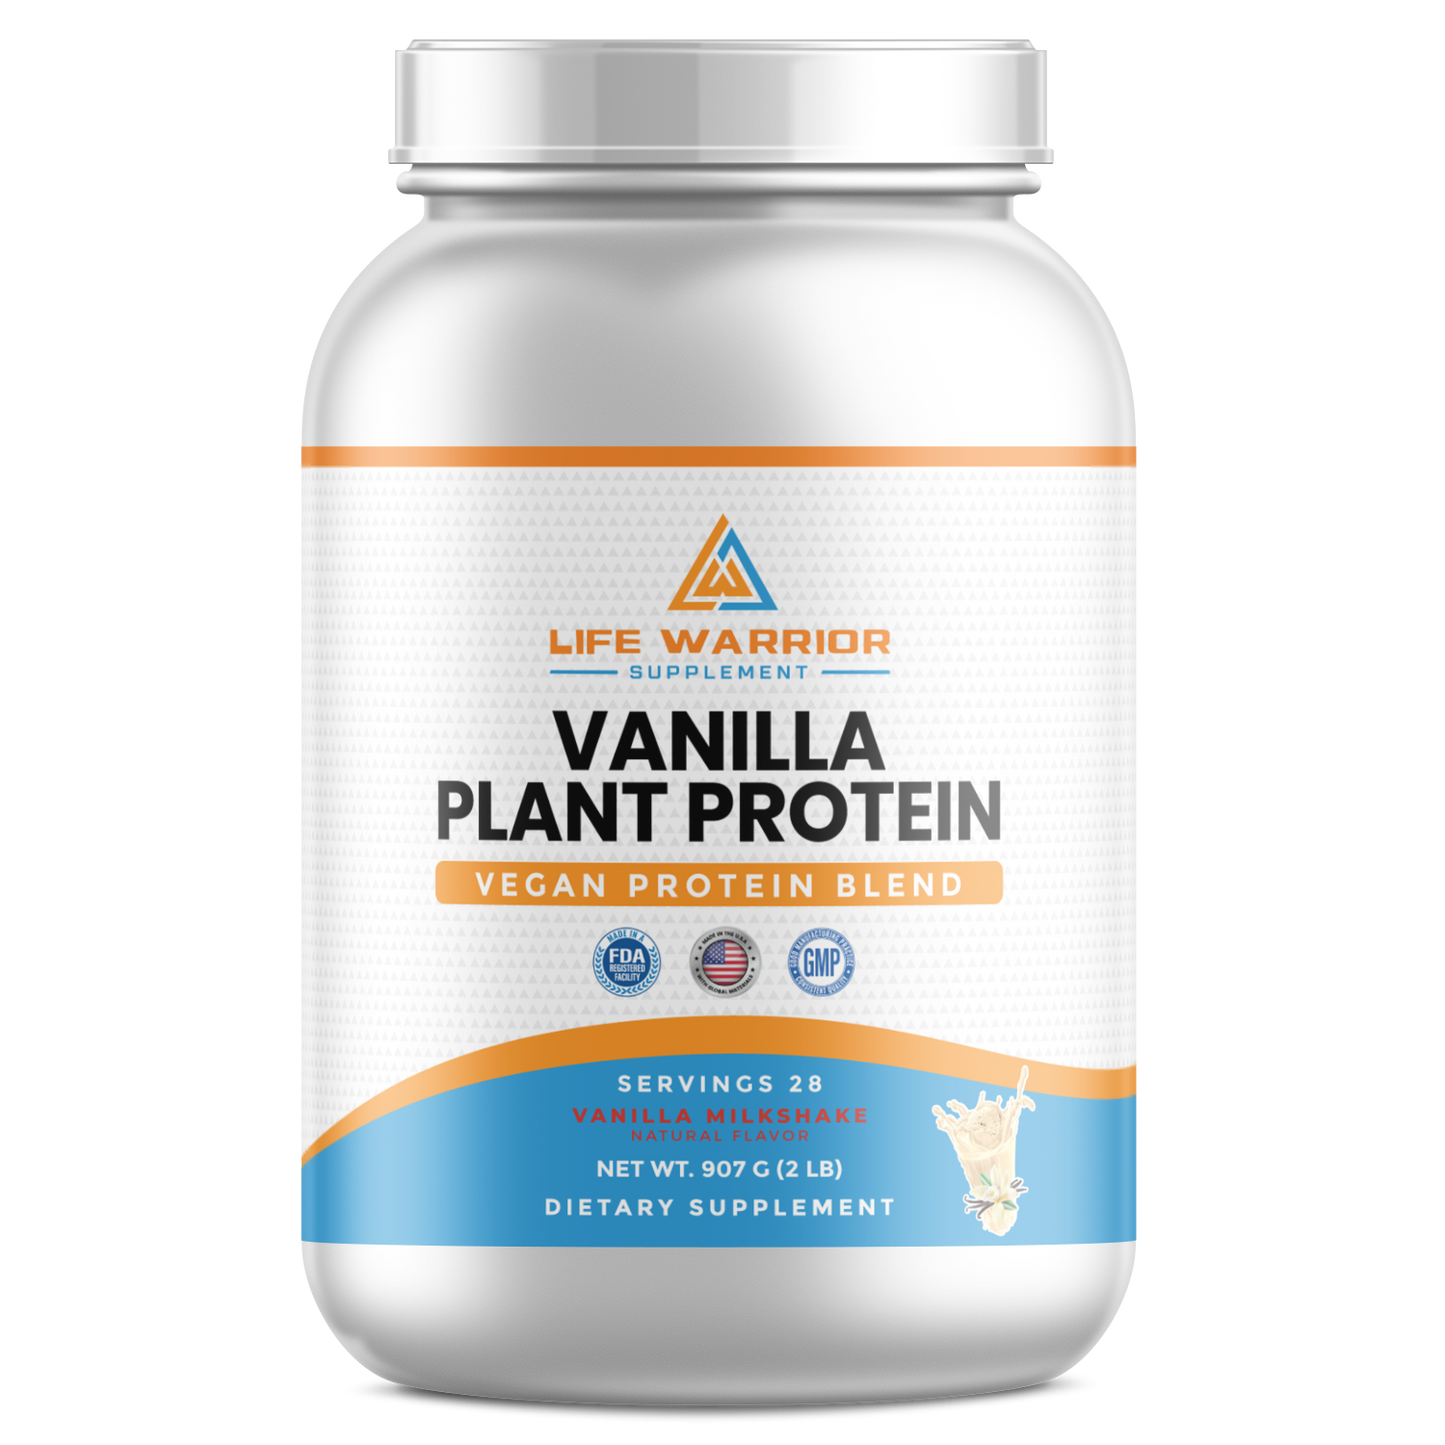 Warrior Vanilla Plant Protein